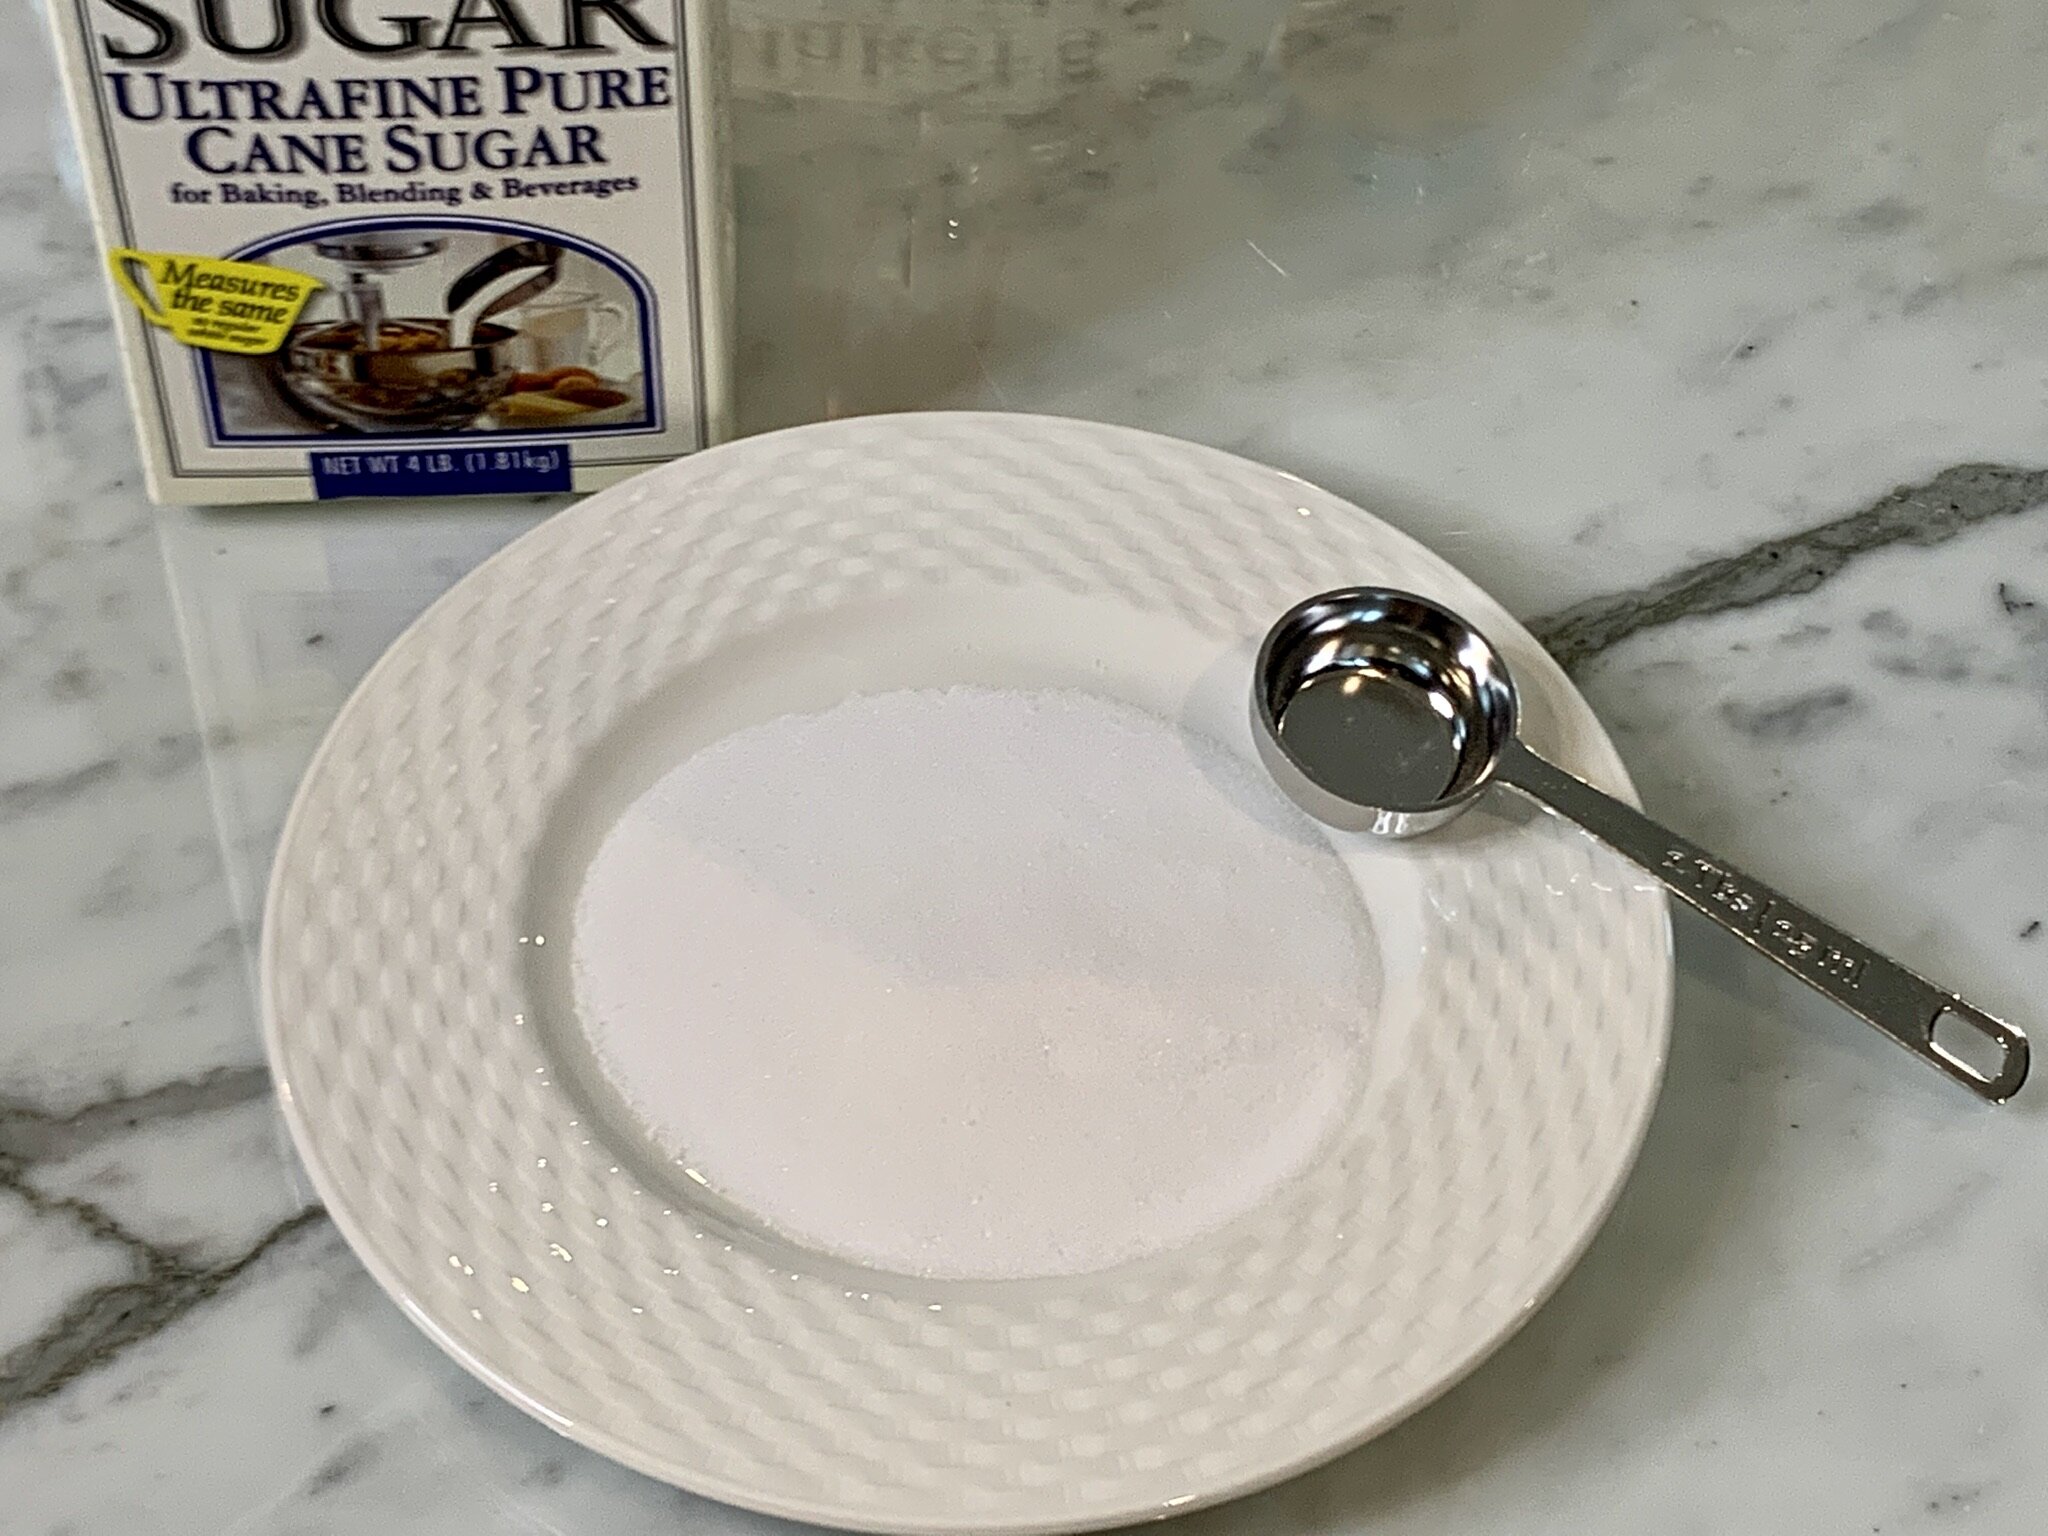 Superfine sugar on plate.